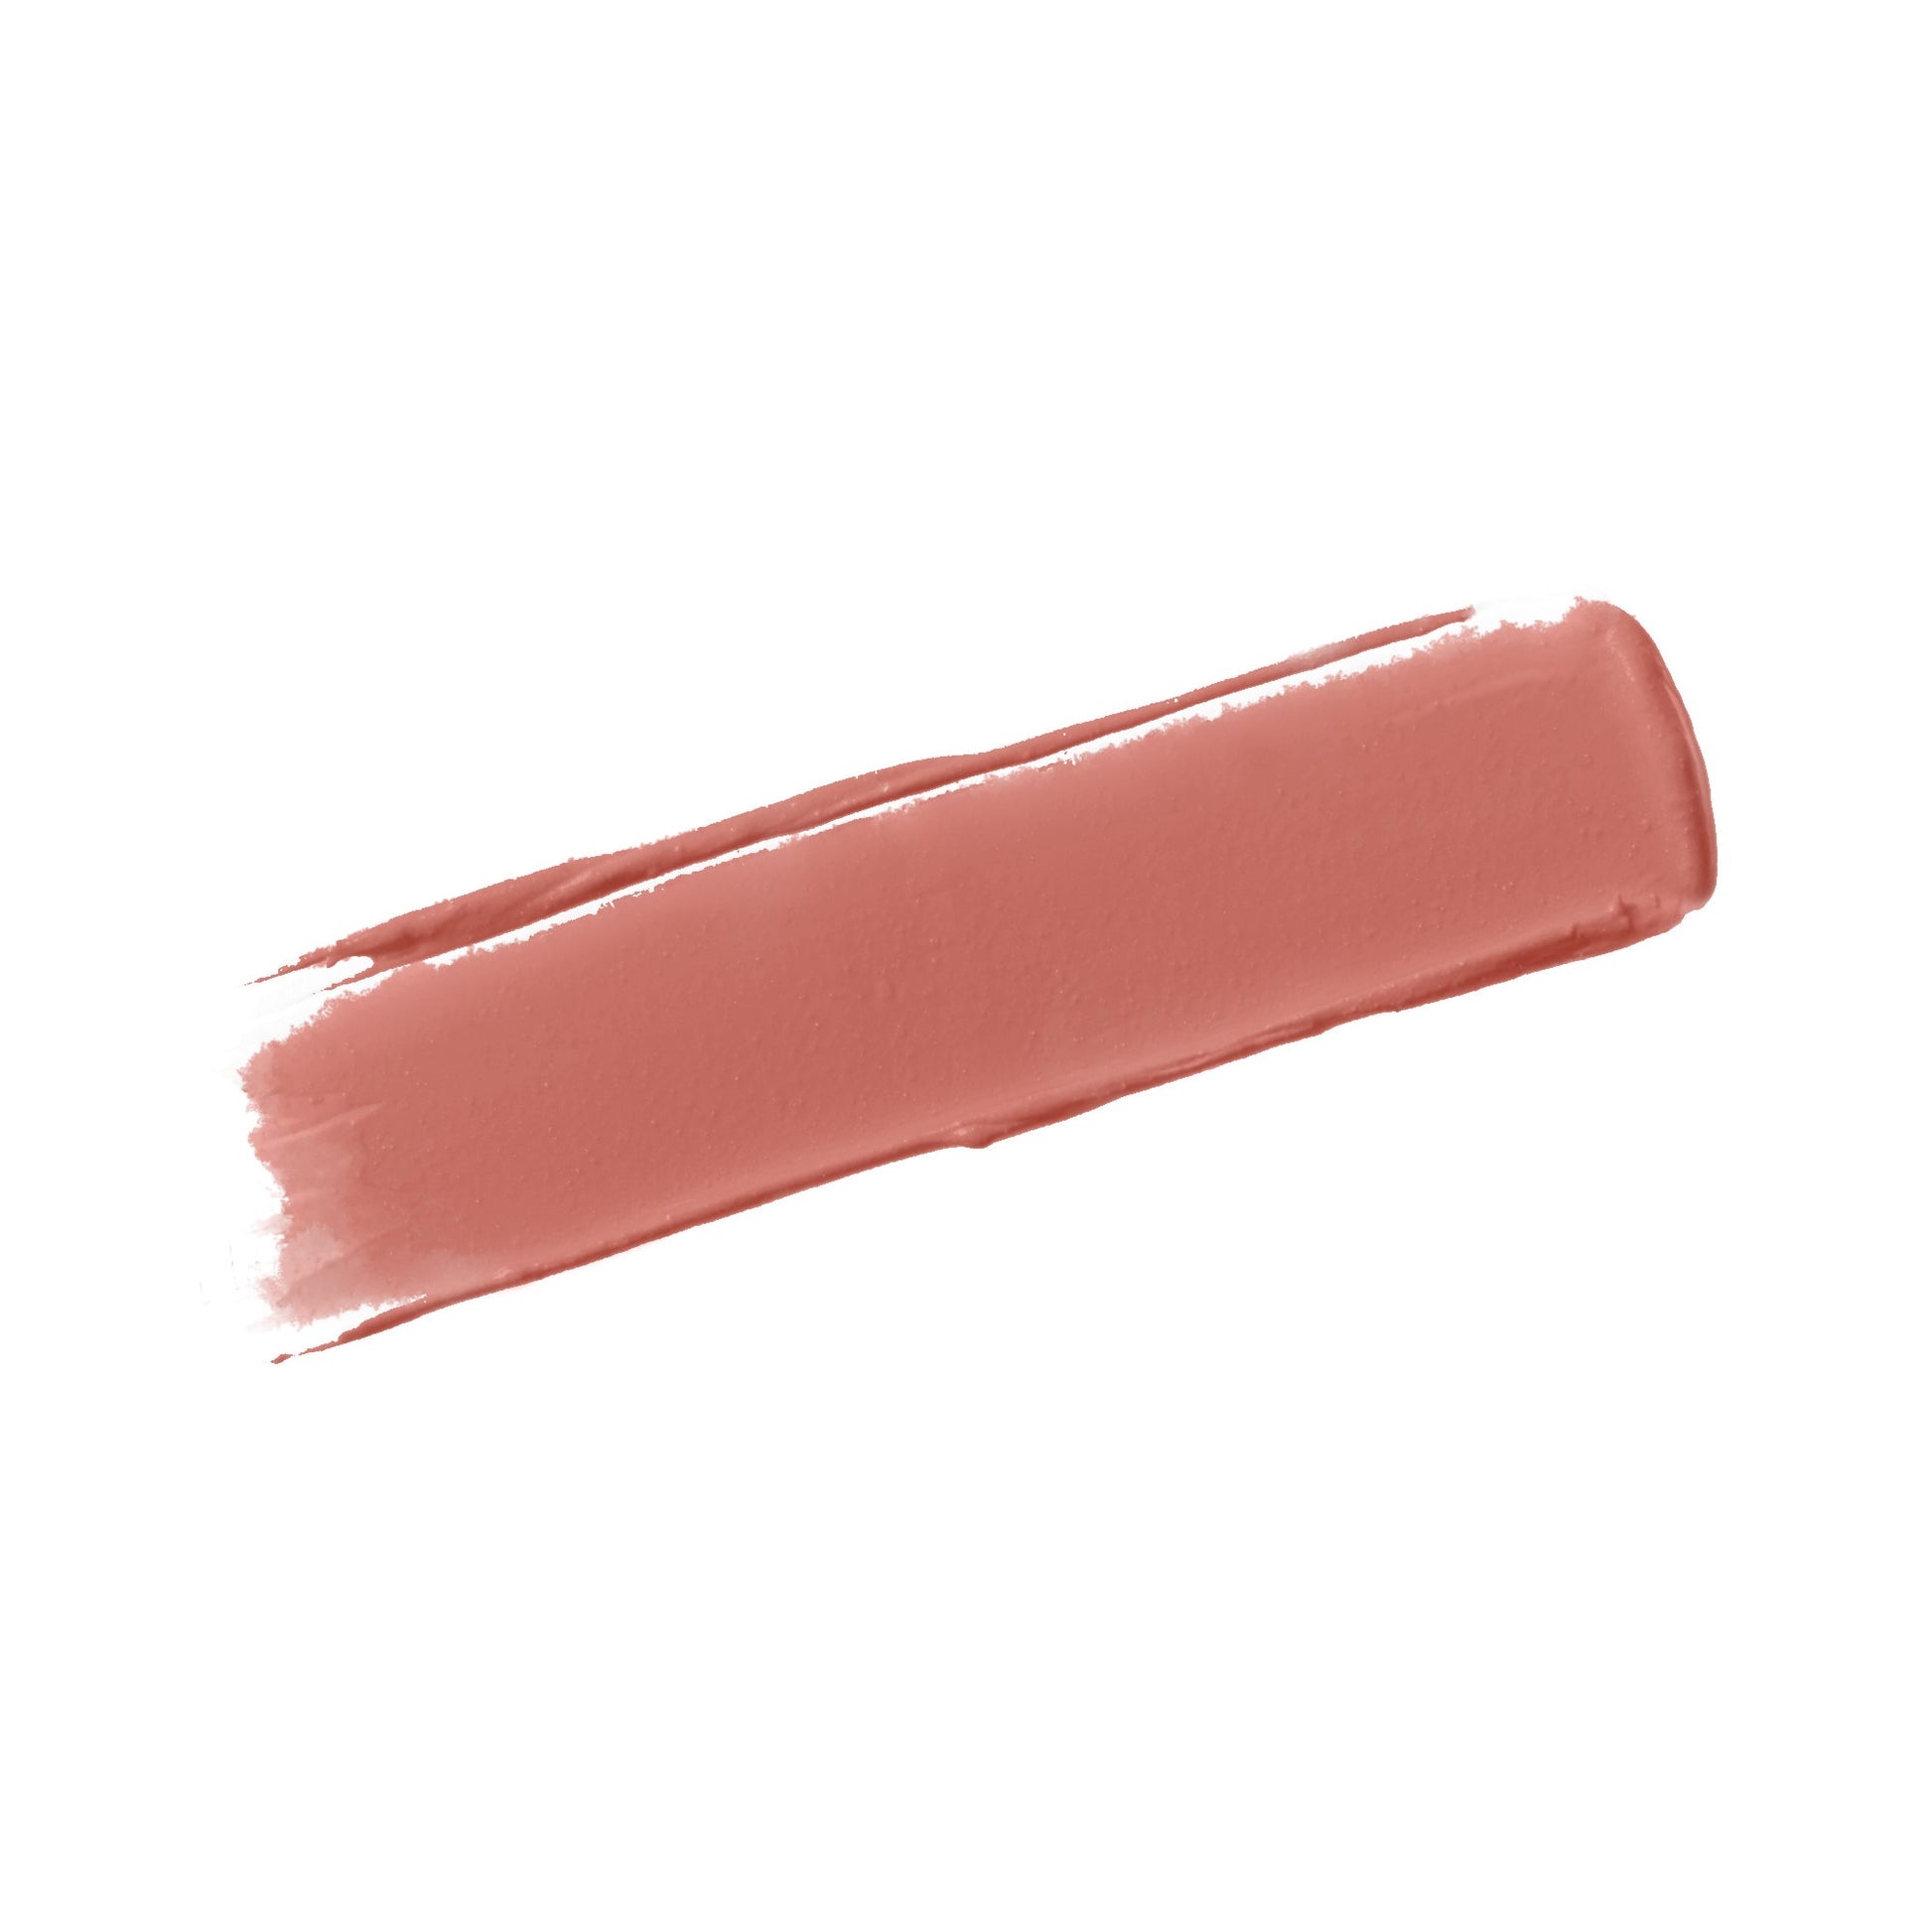 Fall In Love - Matte Liquid Lipstick Liquid Lipstick - Laila Beauty Care Liquid Lipstick